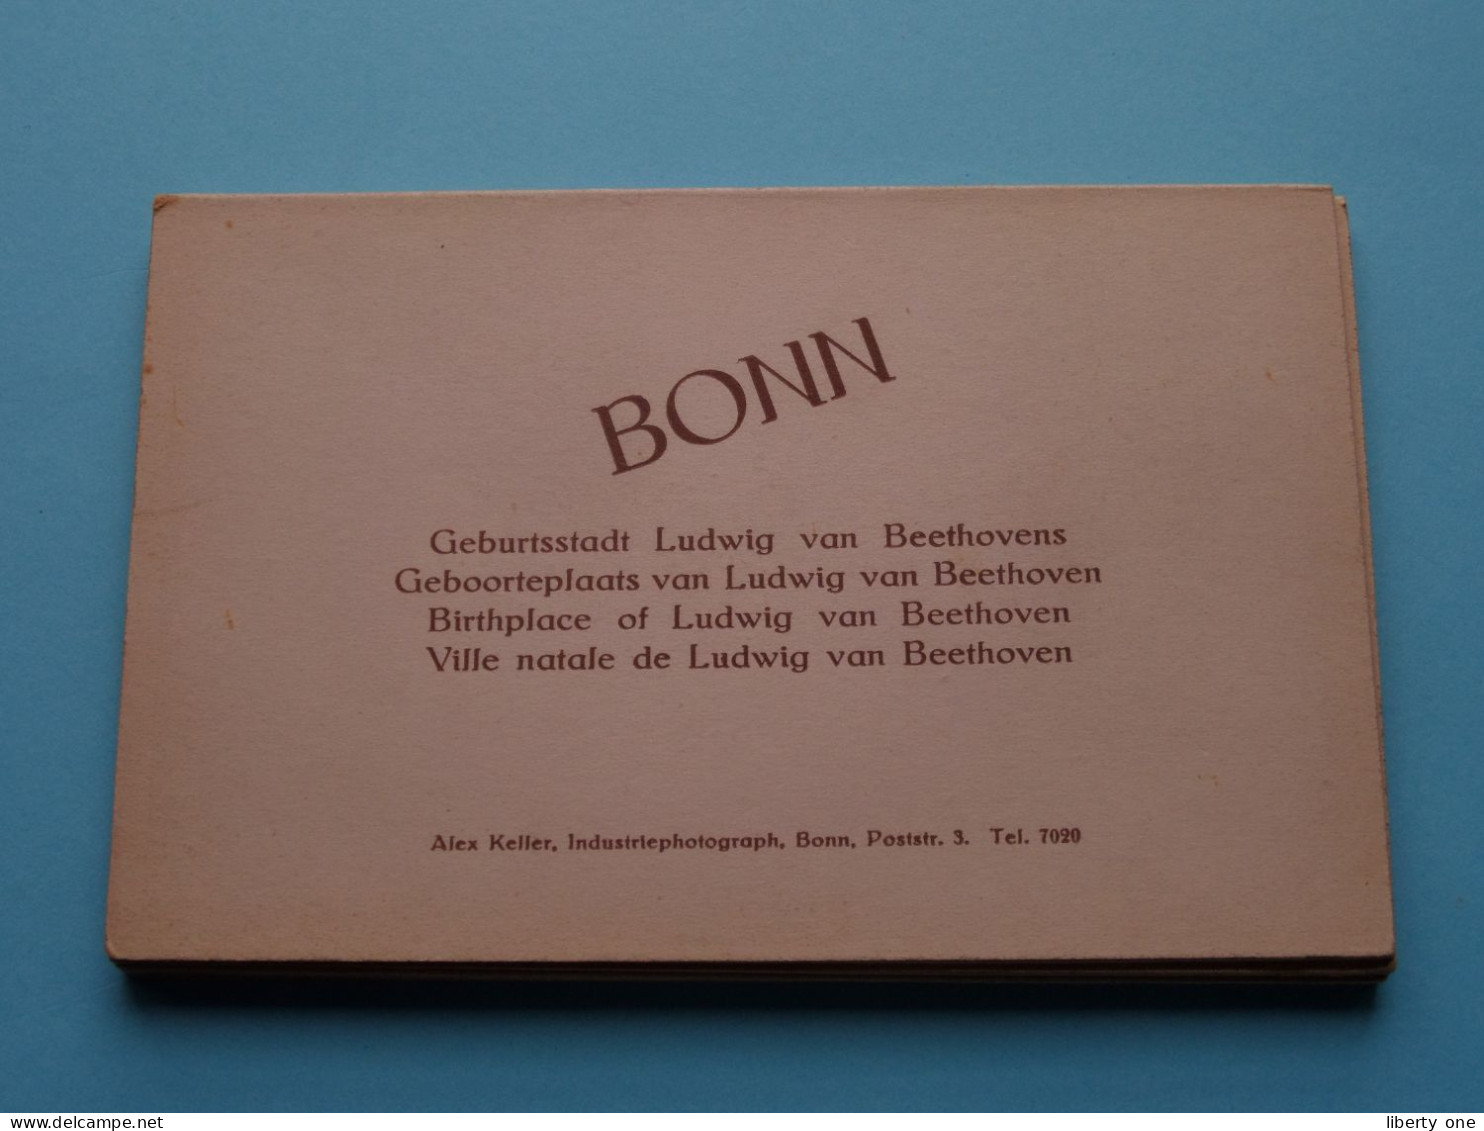 Hotel BERGISCHER HOF > Bonn a. Rhein ( Carnet > 10 Karten / Edit. Alex Keller Tél 7020 ) Anno 19?? ( Sehen sie SCANS ) !